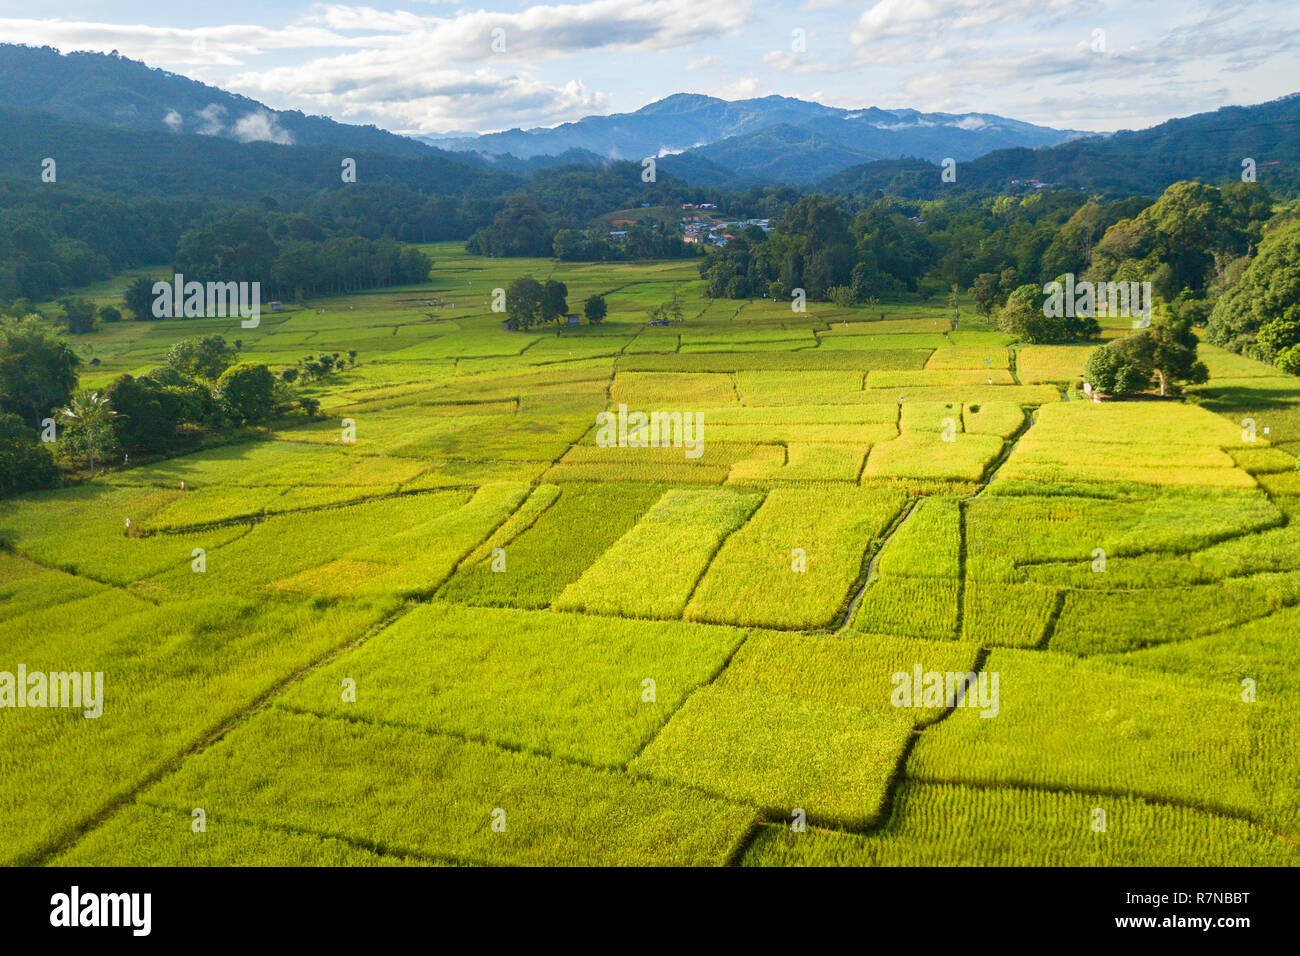 La vallée de rizières dans la région de Sabah Malaisie Bornéo Banque D'Images